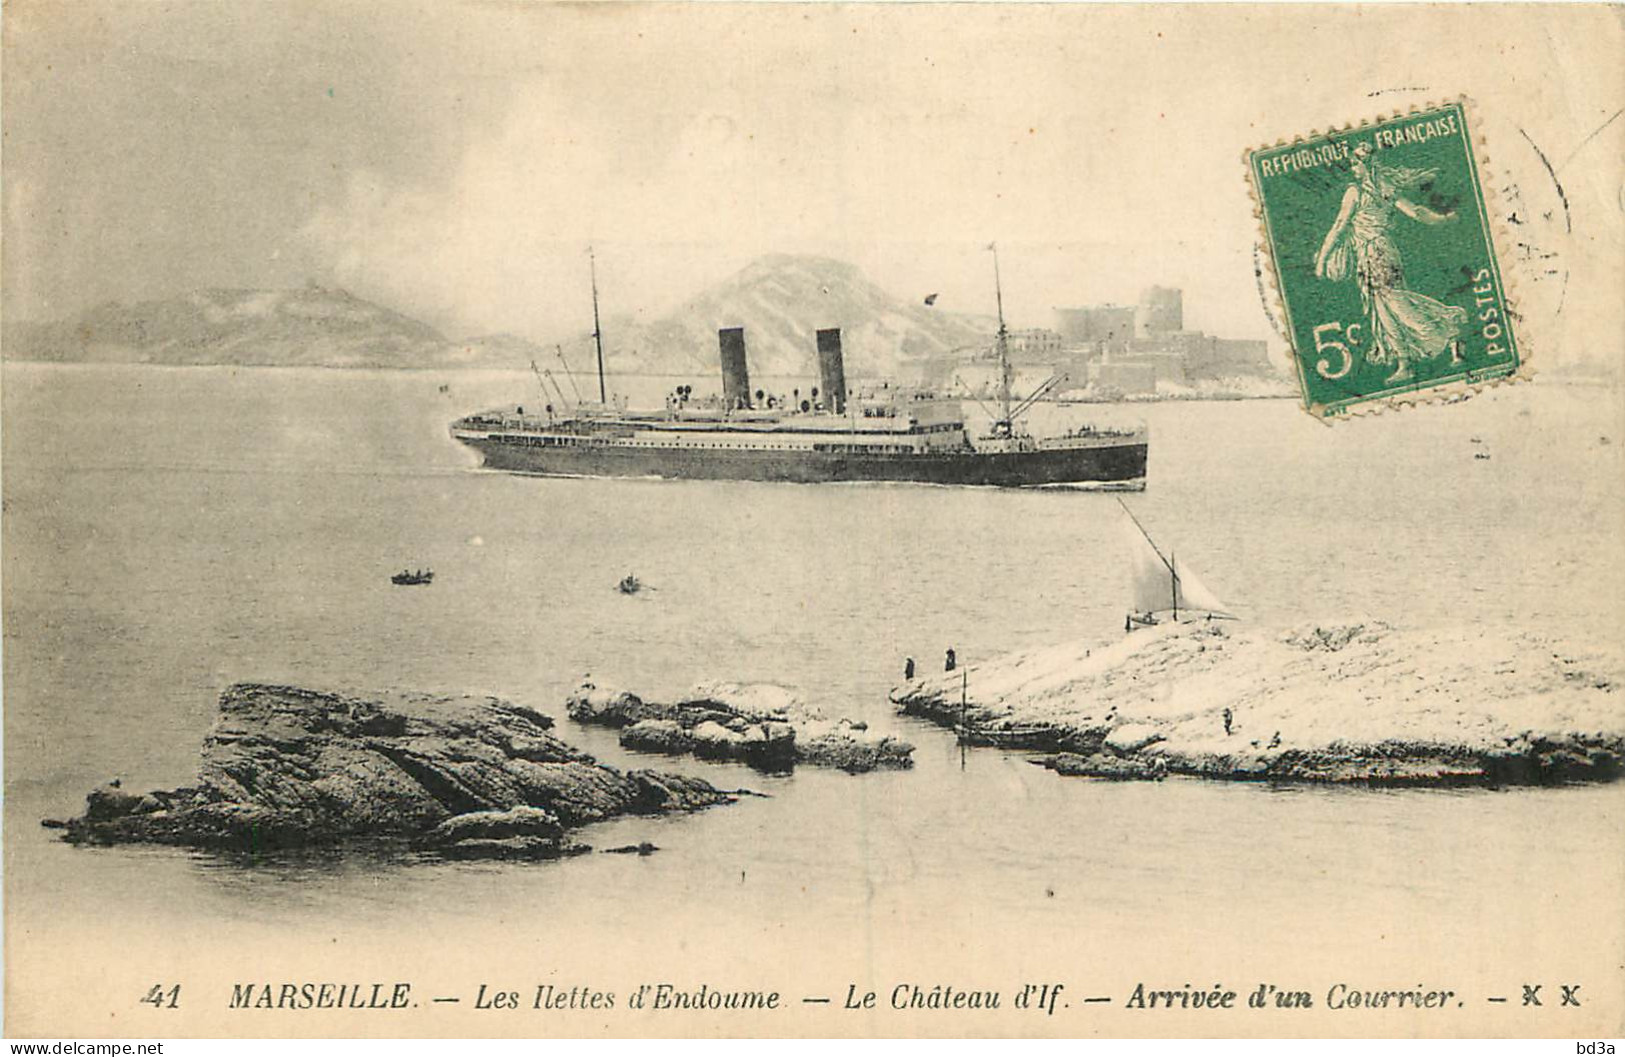 13 - MARSEILLE - LES ILETTES D'ENDOUME - LE CHATEAU D'IF - ARRIVEE D'UN COURRIER - Château D'If, Frioul, Islands...